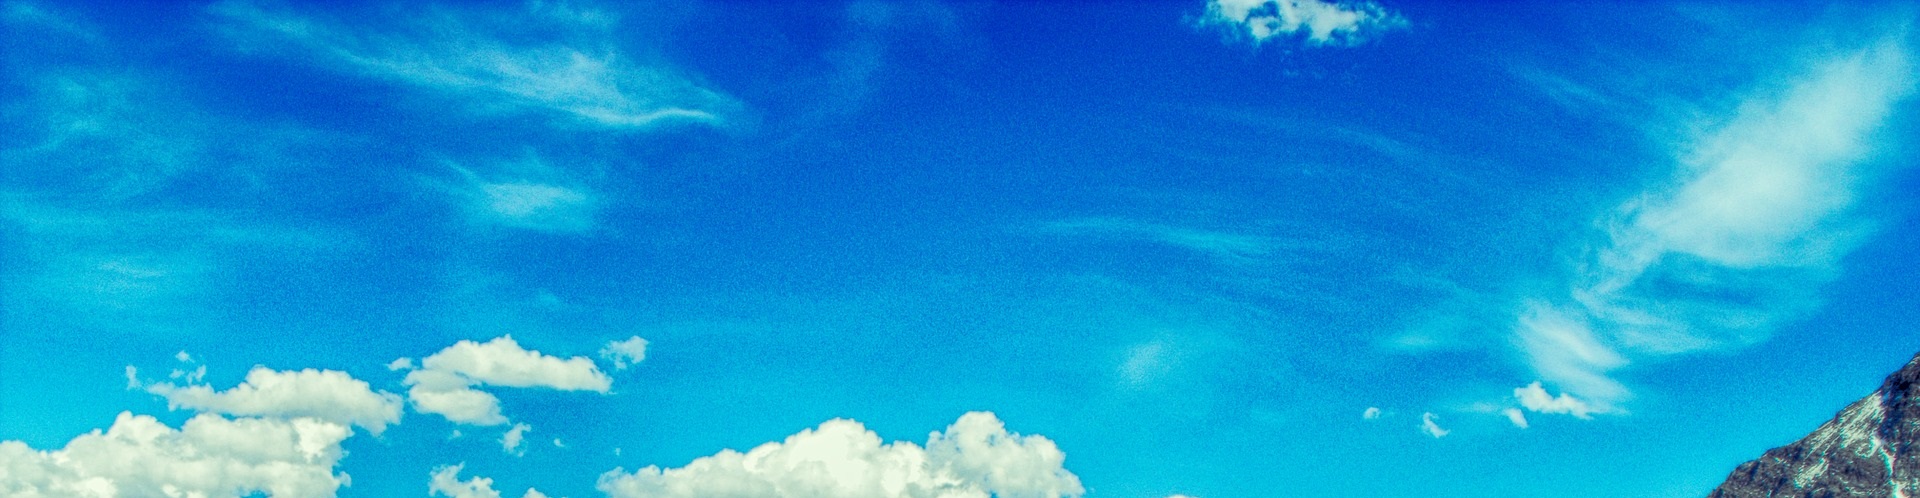 Blå himmel och några vita moln.